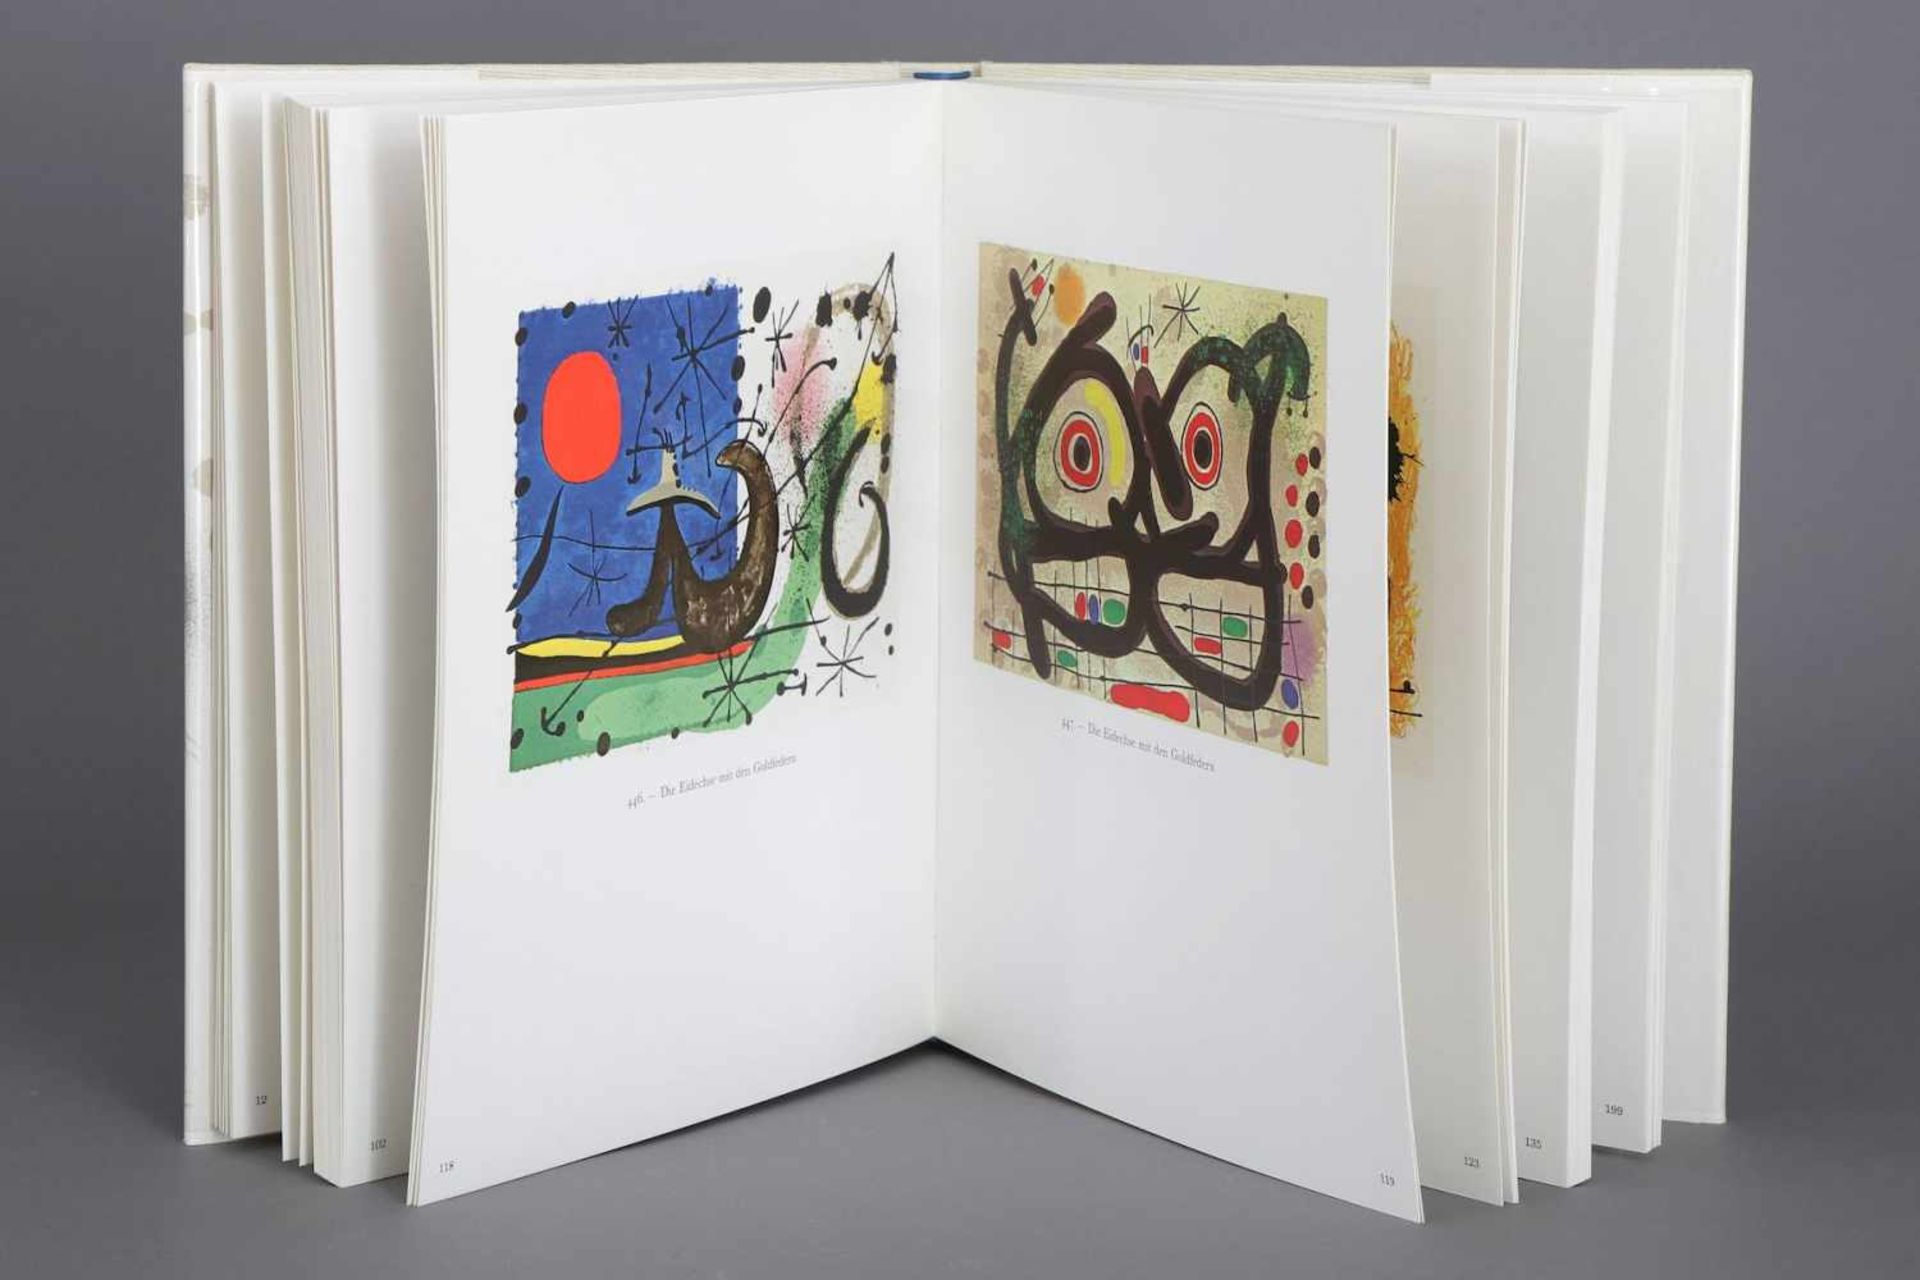 Buch, Juan Miro ¨Der Lithograph III¨Maeght, Paris, 1977, Vorwort von Joan Teixidor, Hrsg. Weber, - Bild 2 aus 2